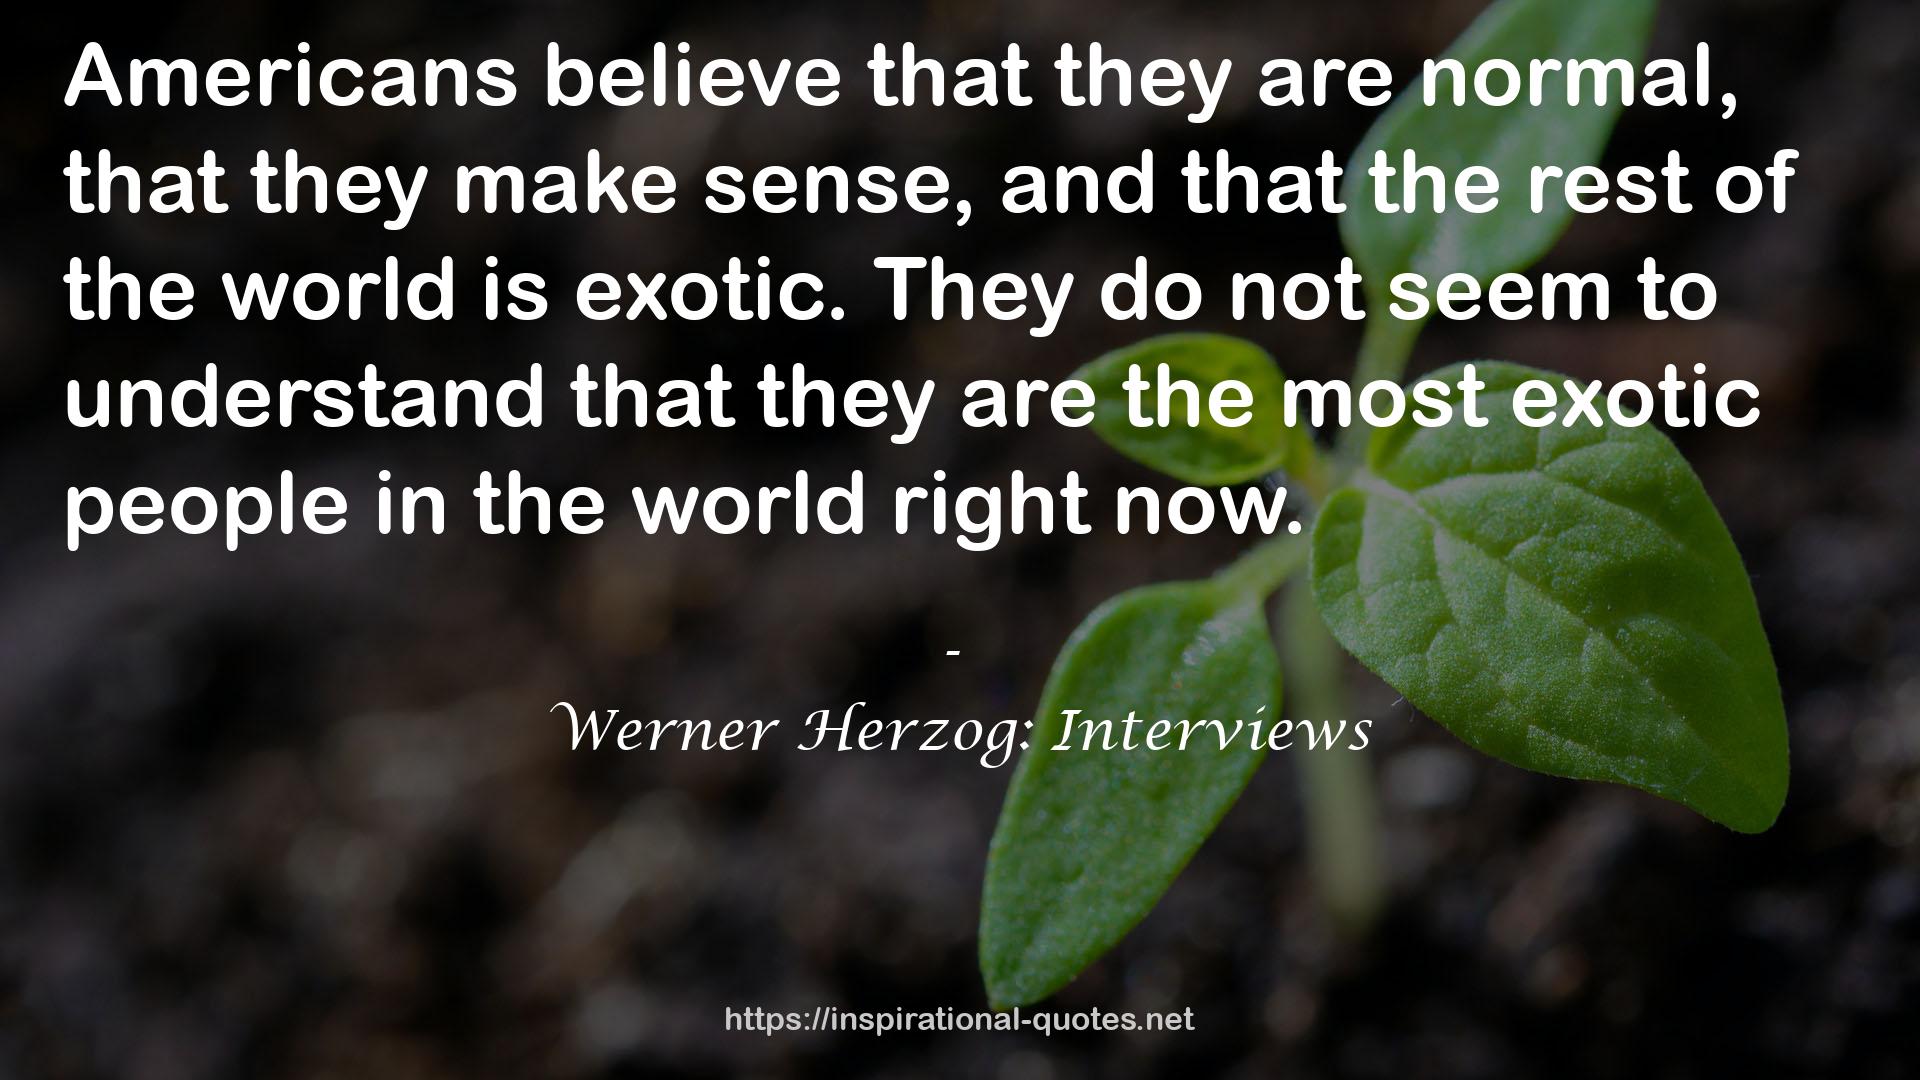 Werner Herzog: Interviews QUOTES